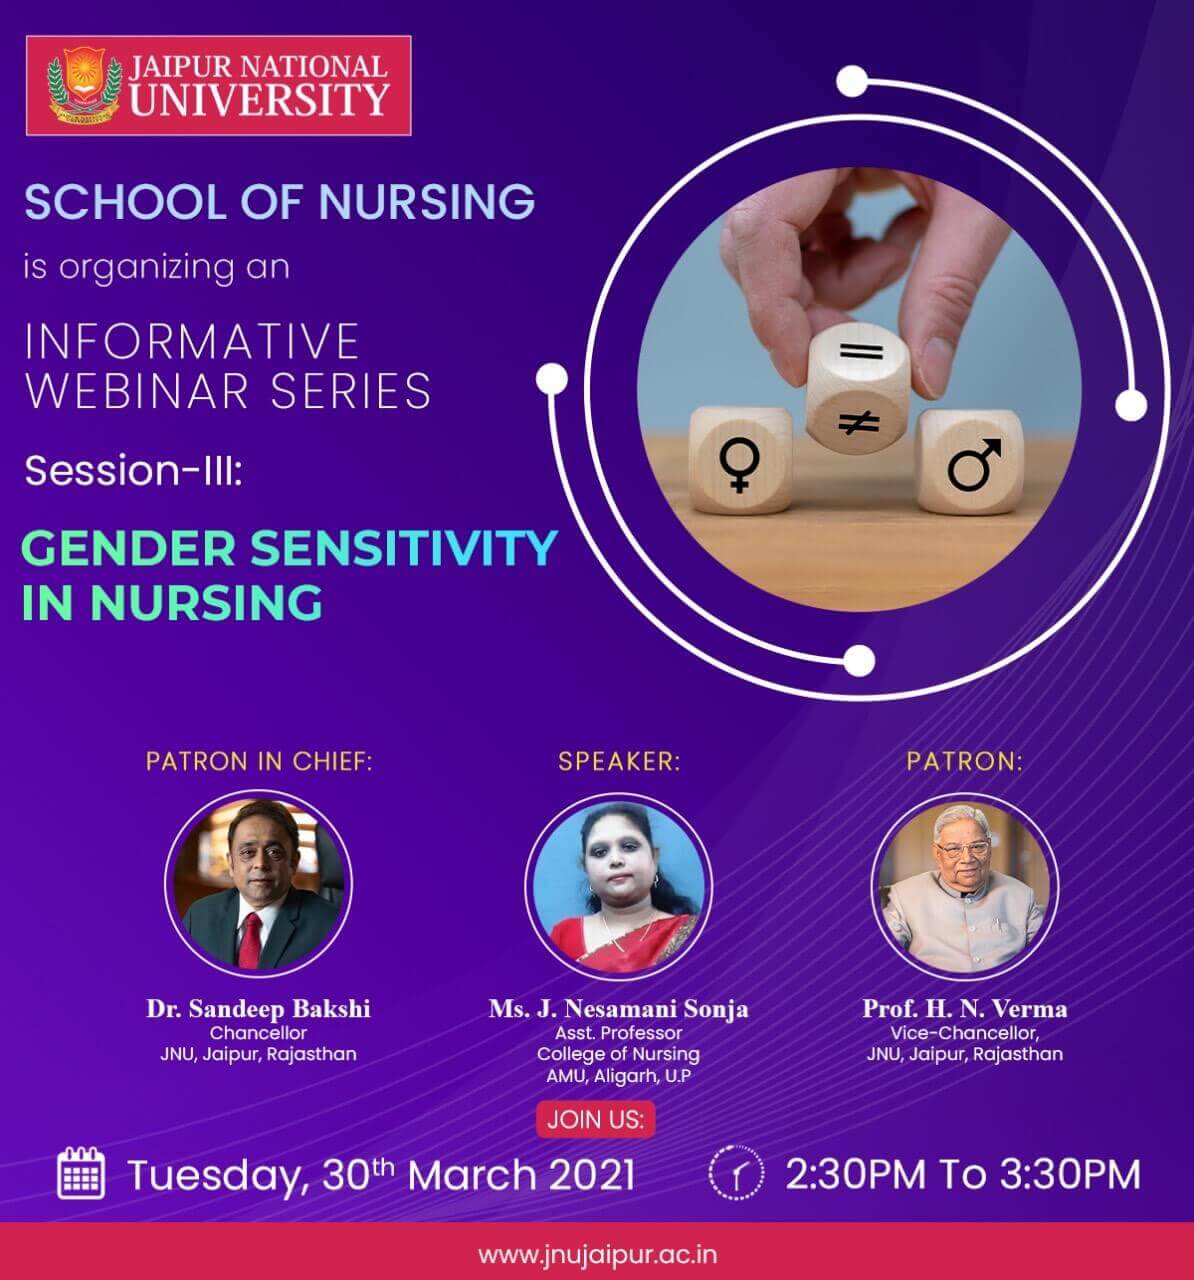  Webinar on “Gender Sensitivity in Nursing”